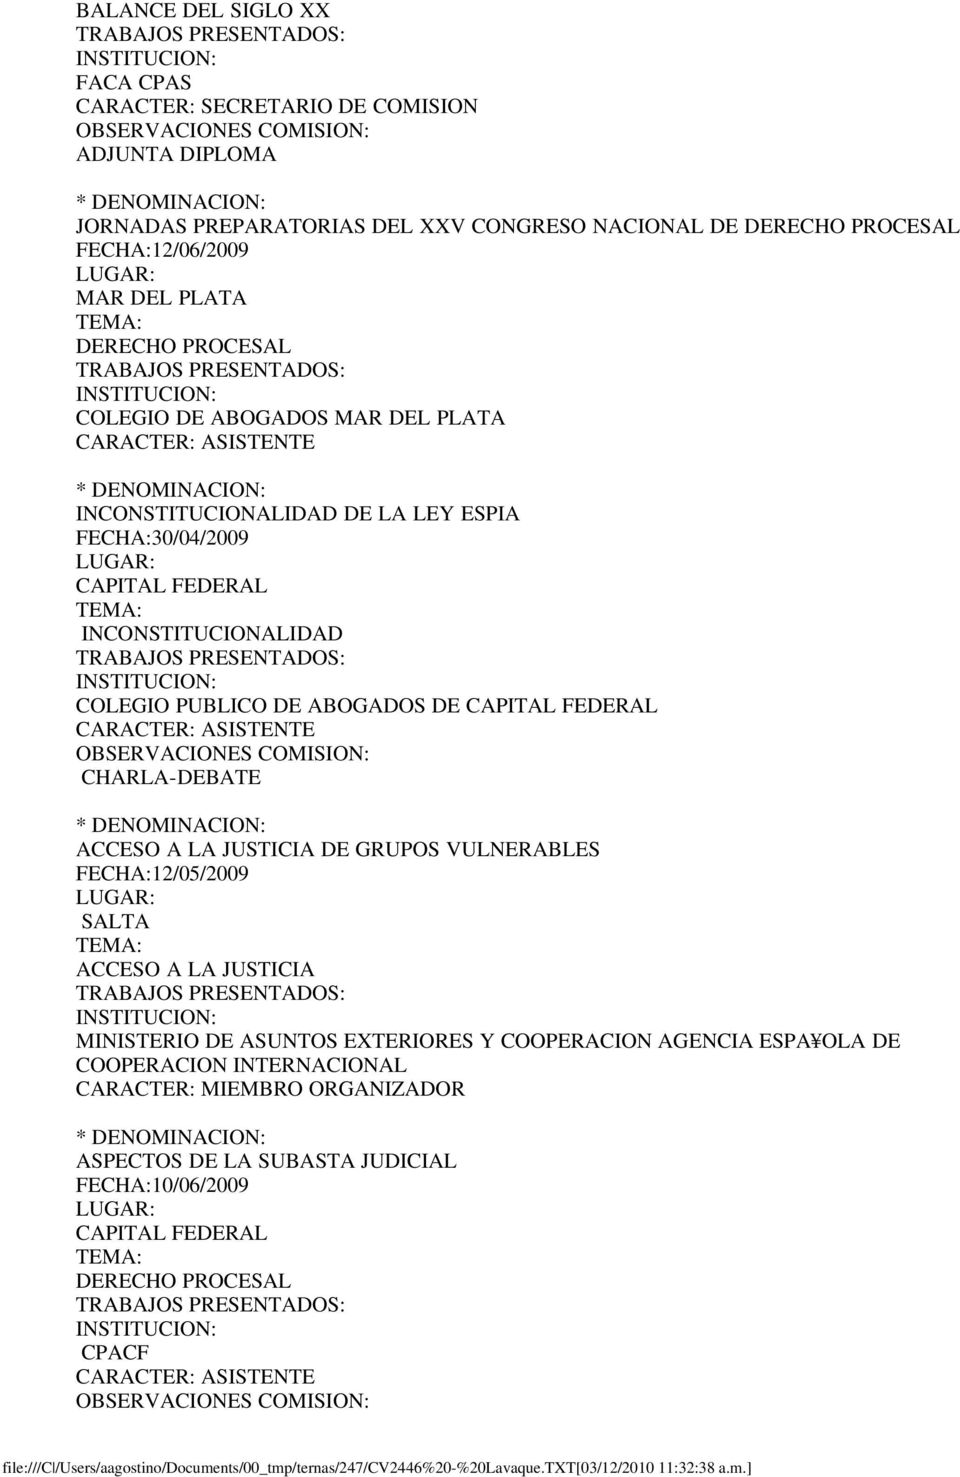 PUBLICO DE ABOGADOS DE CAPITAL FEDERAL CHARLA-DEBATE ACCESO A LA JUSTICIA DE GRUPOS VULNERABLES FECHA:12/05/2009 ACCESO A LA JUSTICIA MINISTERIO DE ASUNTOS EXTERIORES Y